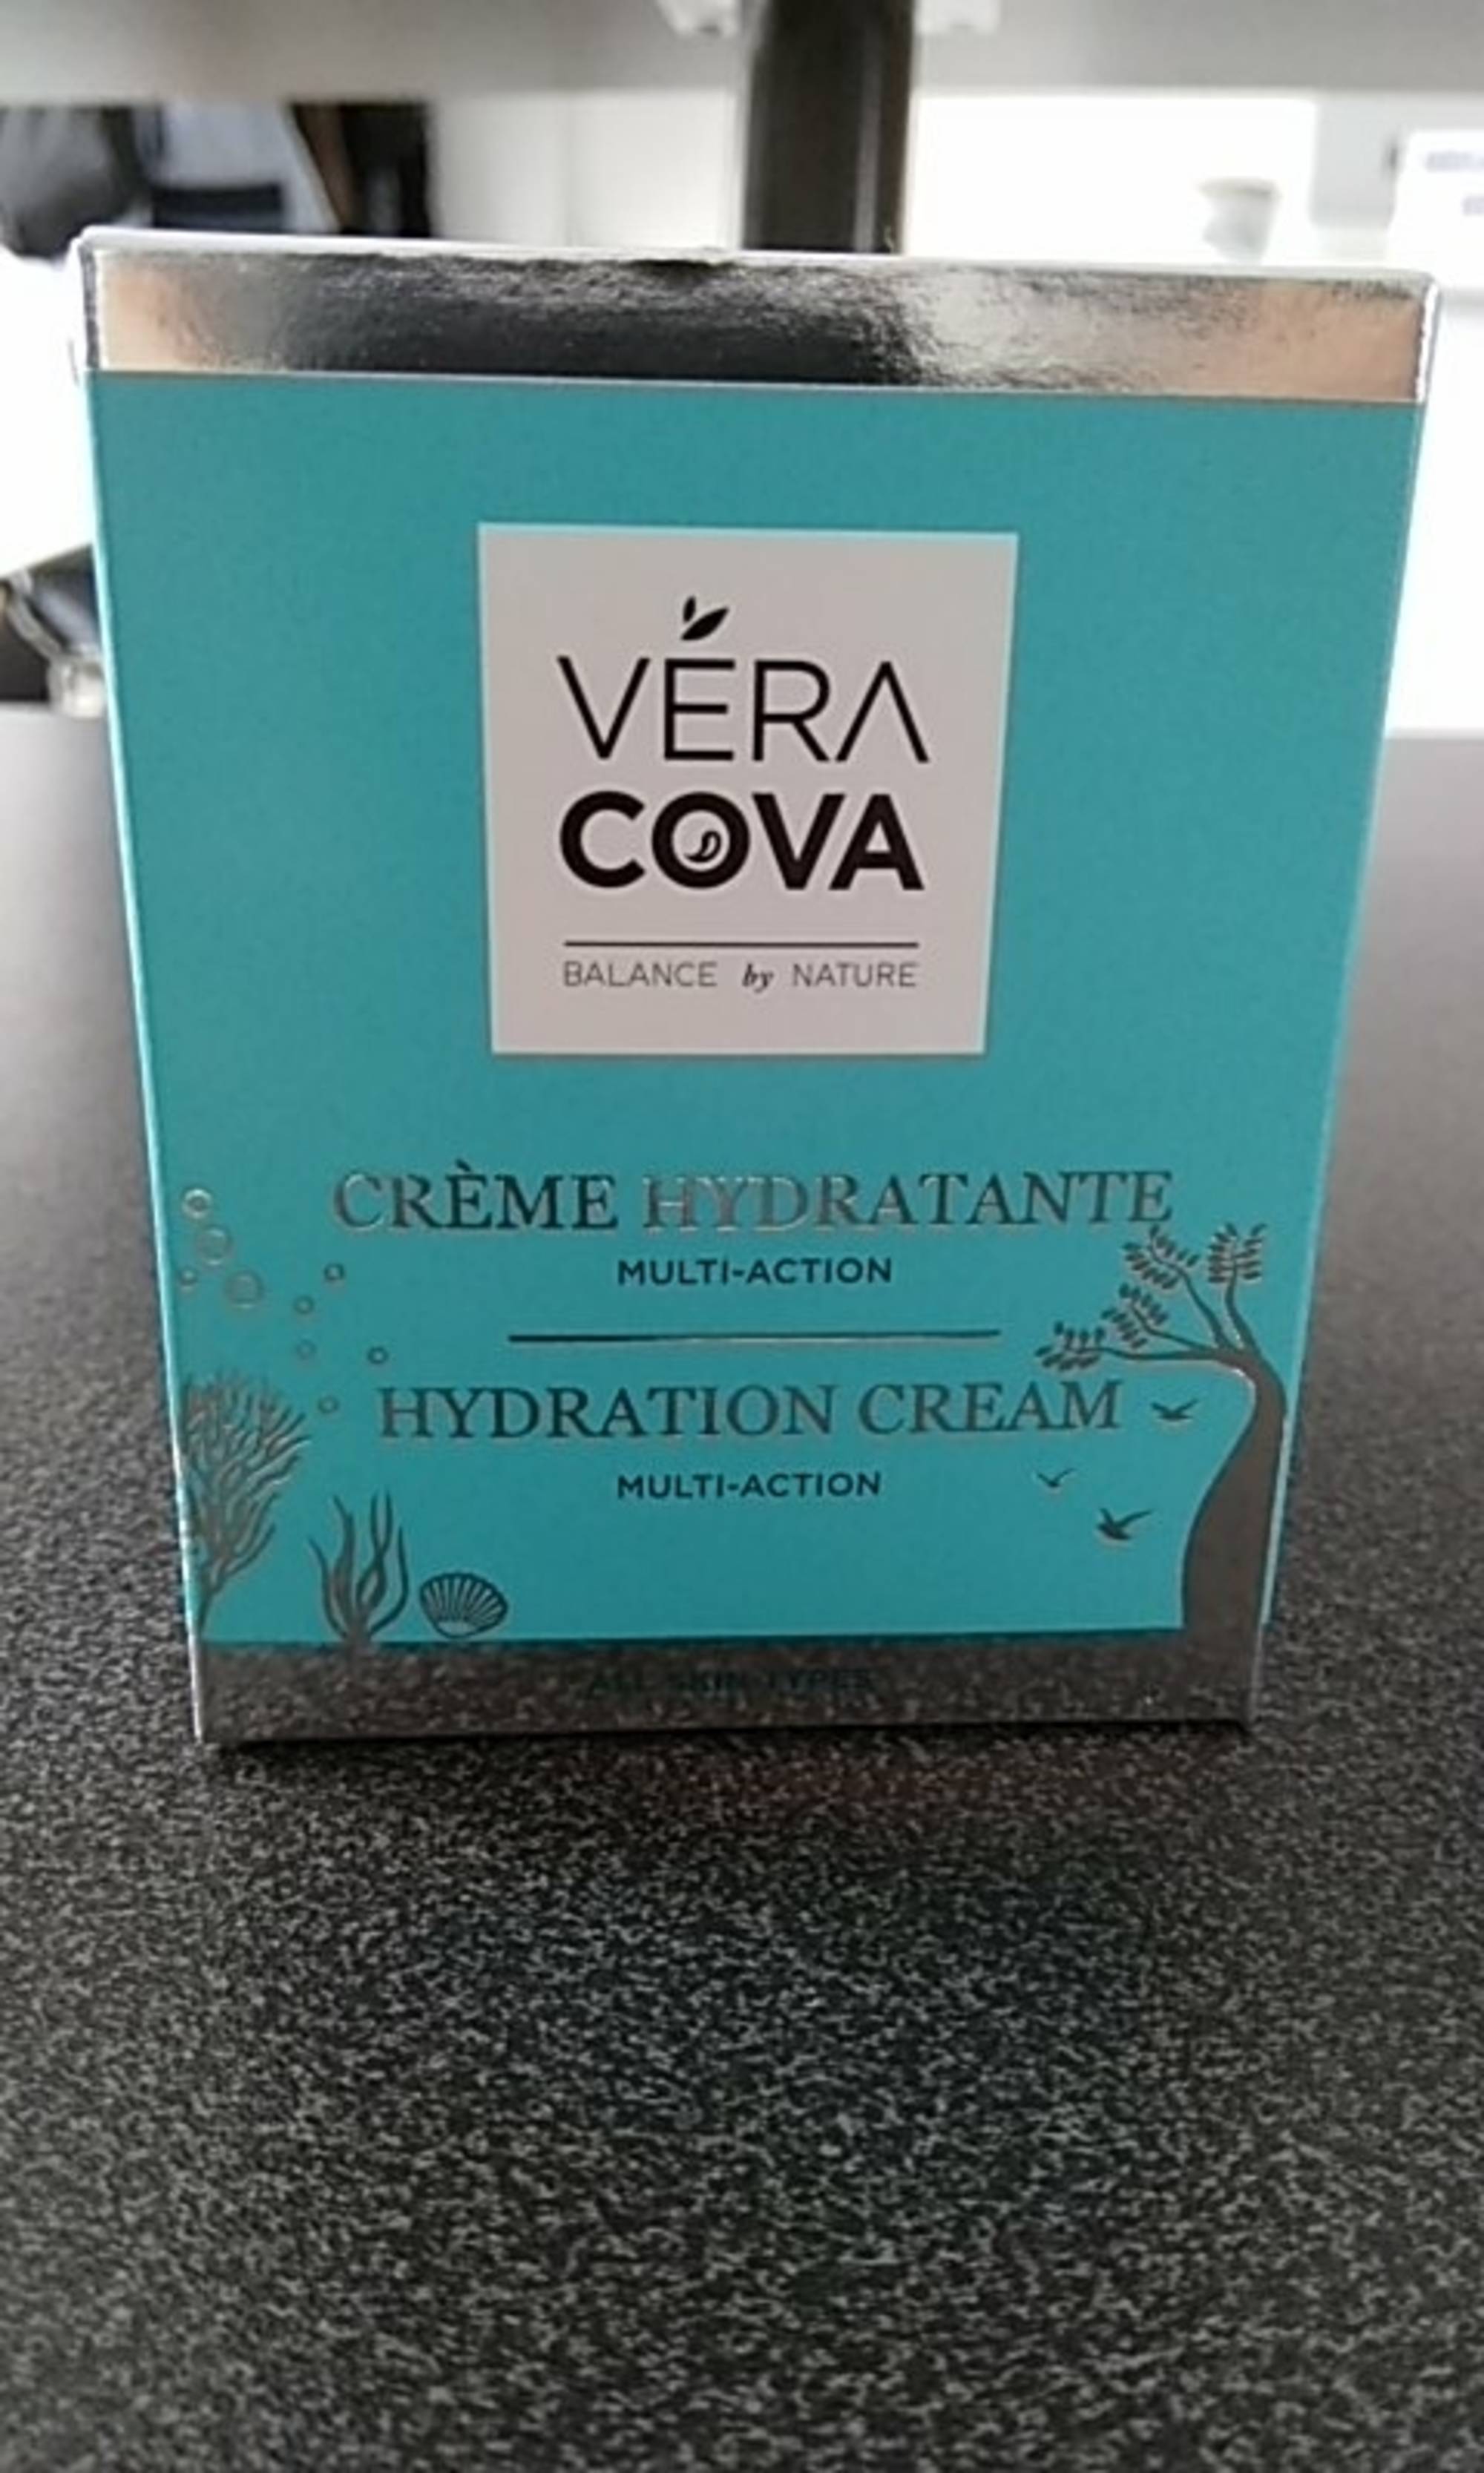 VERACOVA - Crème hydratante multi-action